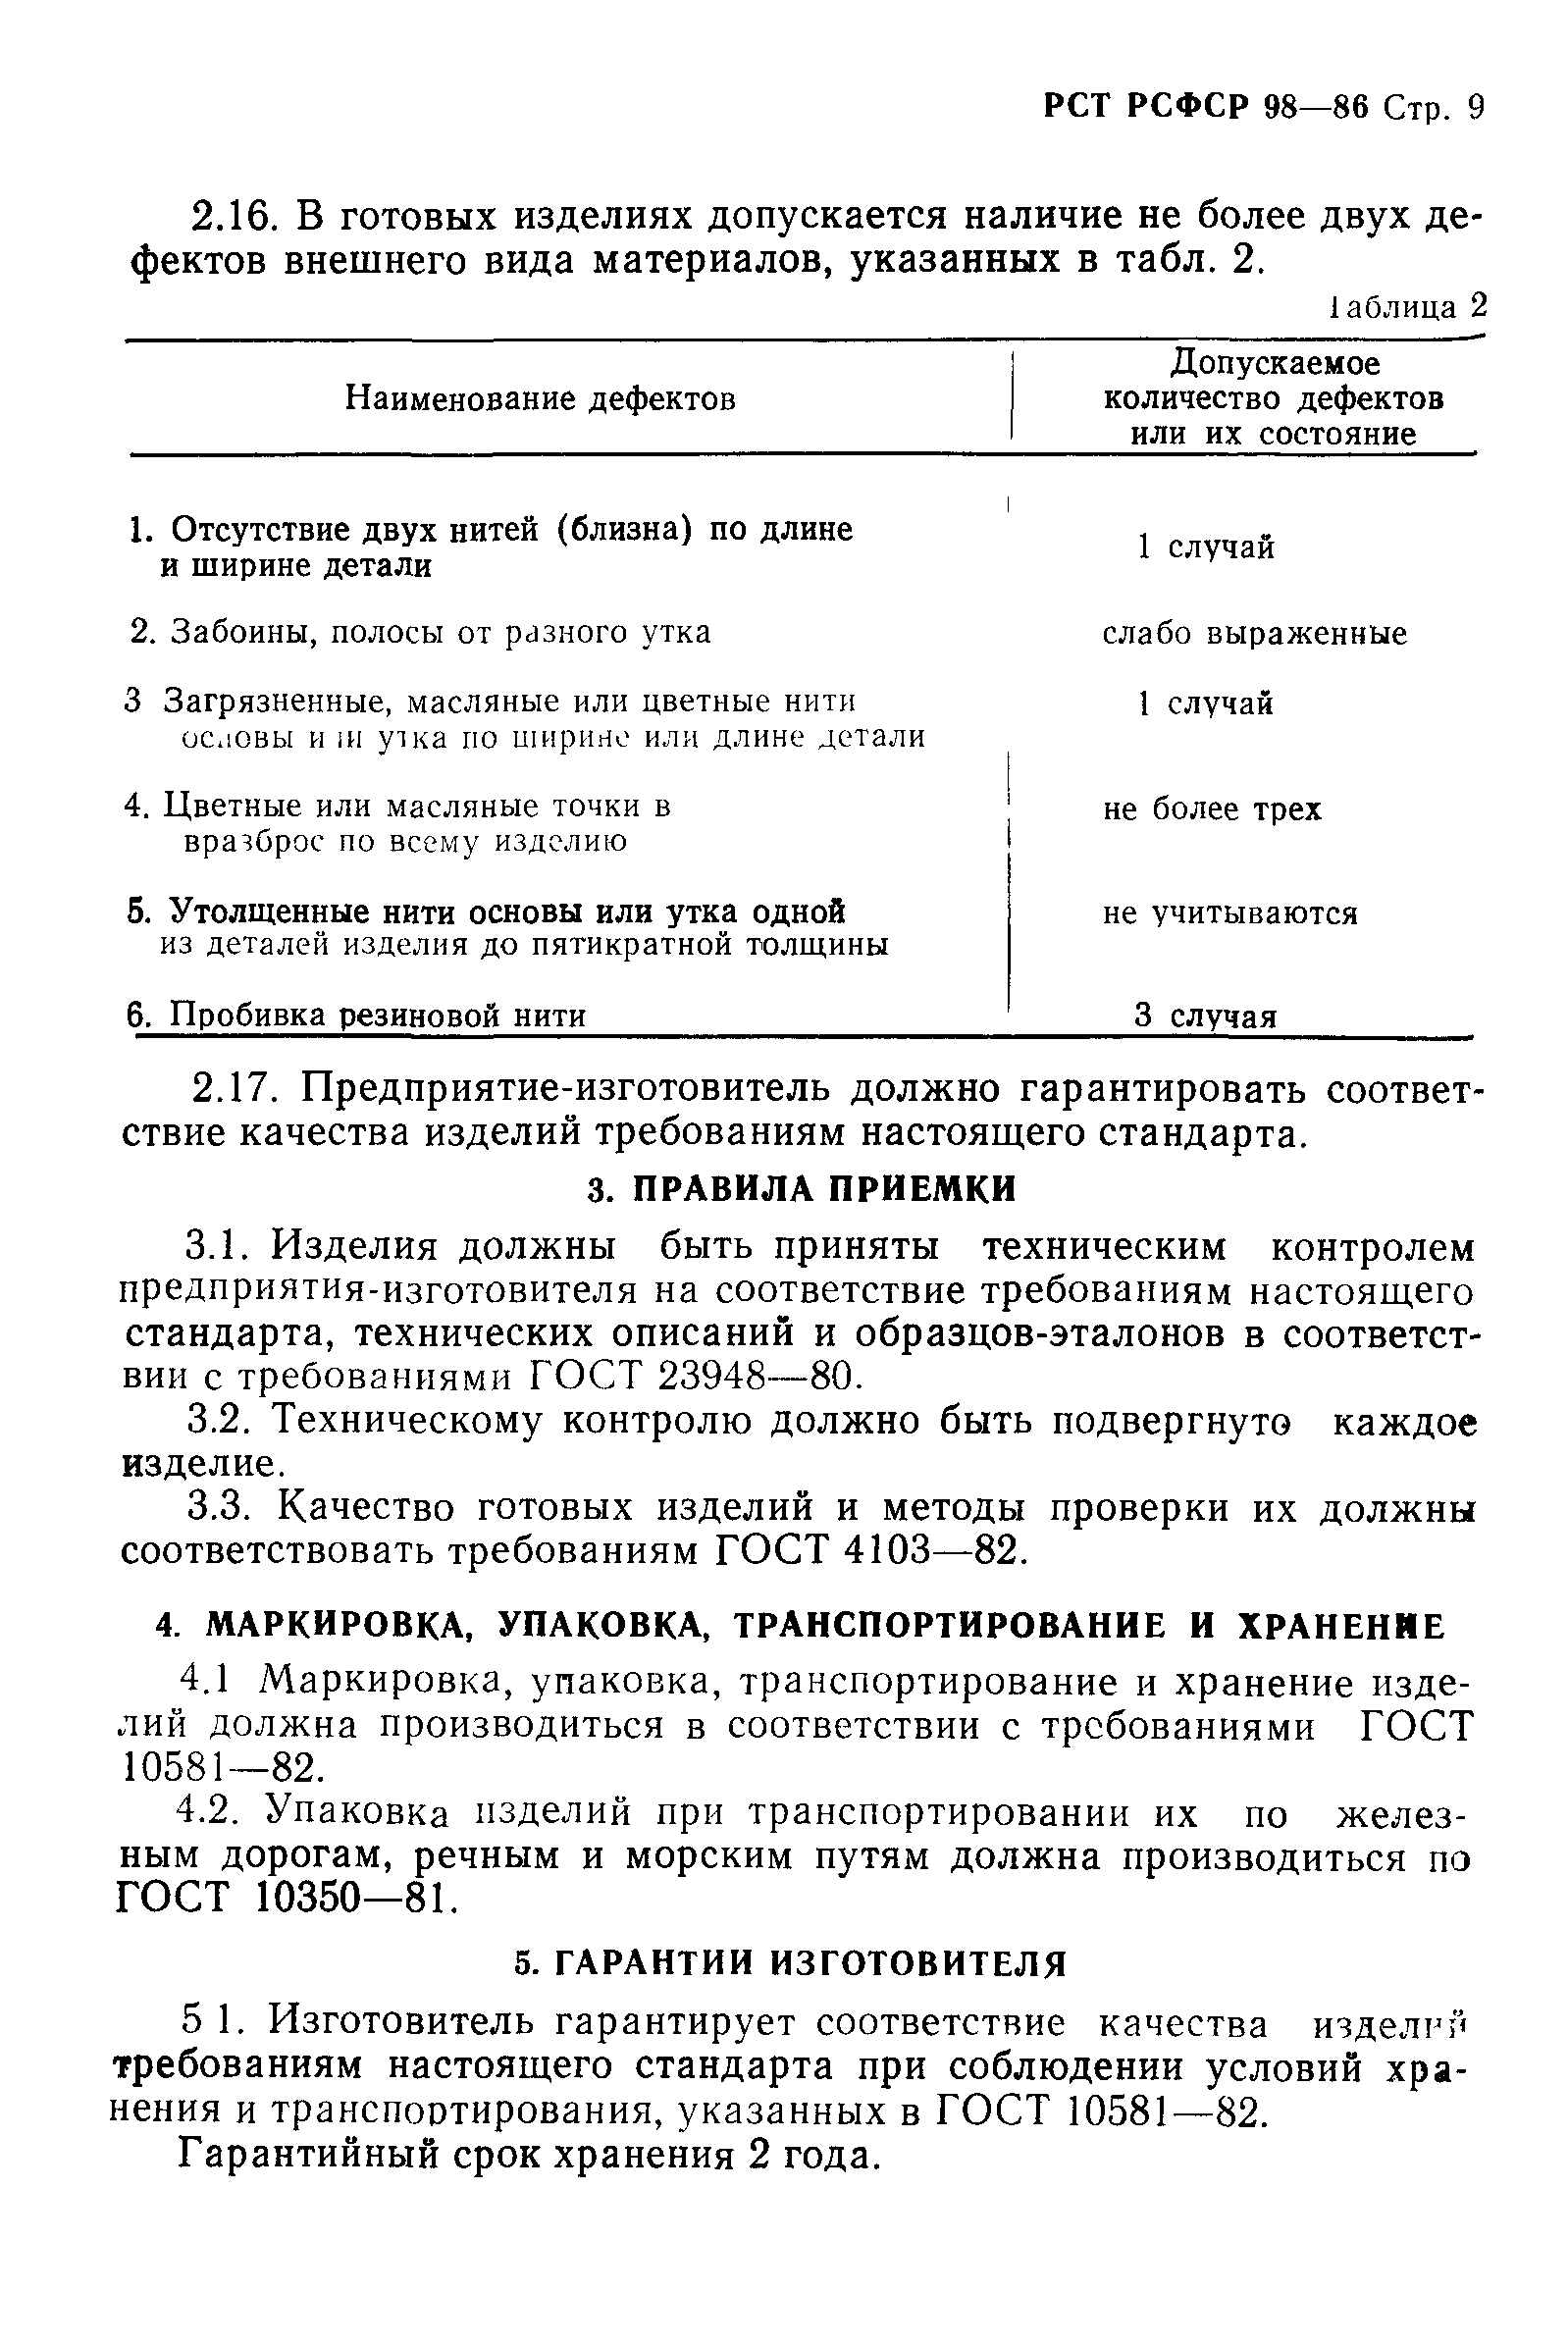 РСТ РСФСР 98-86